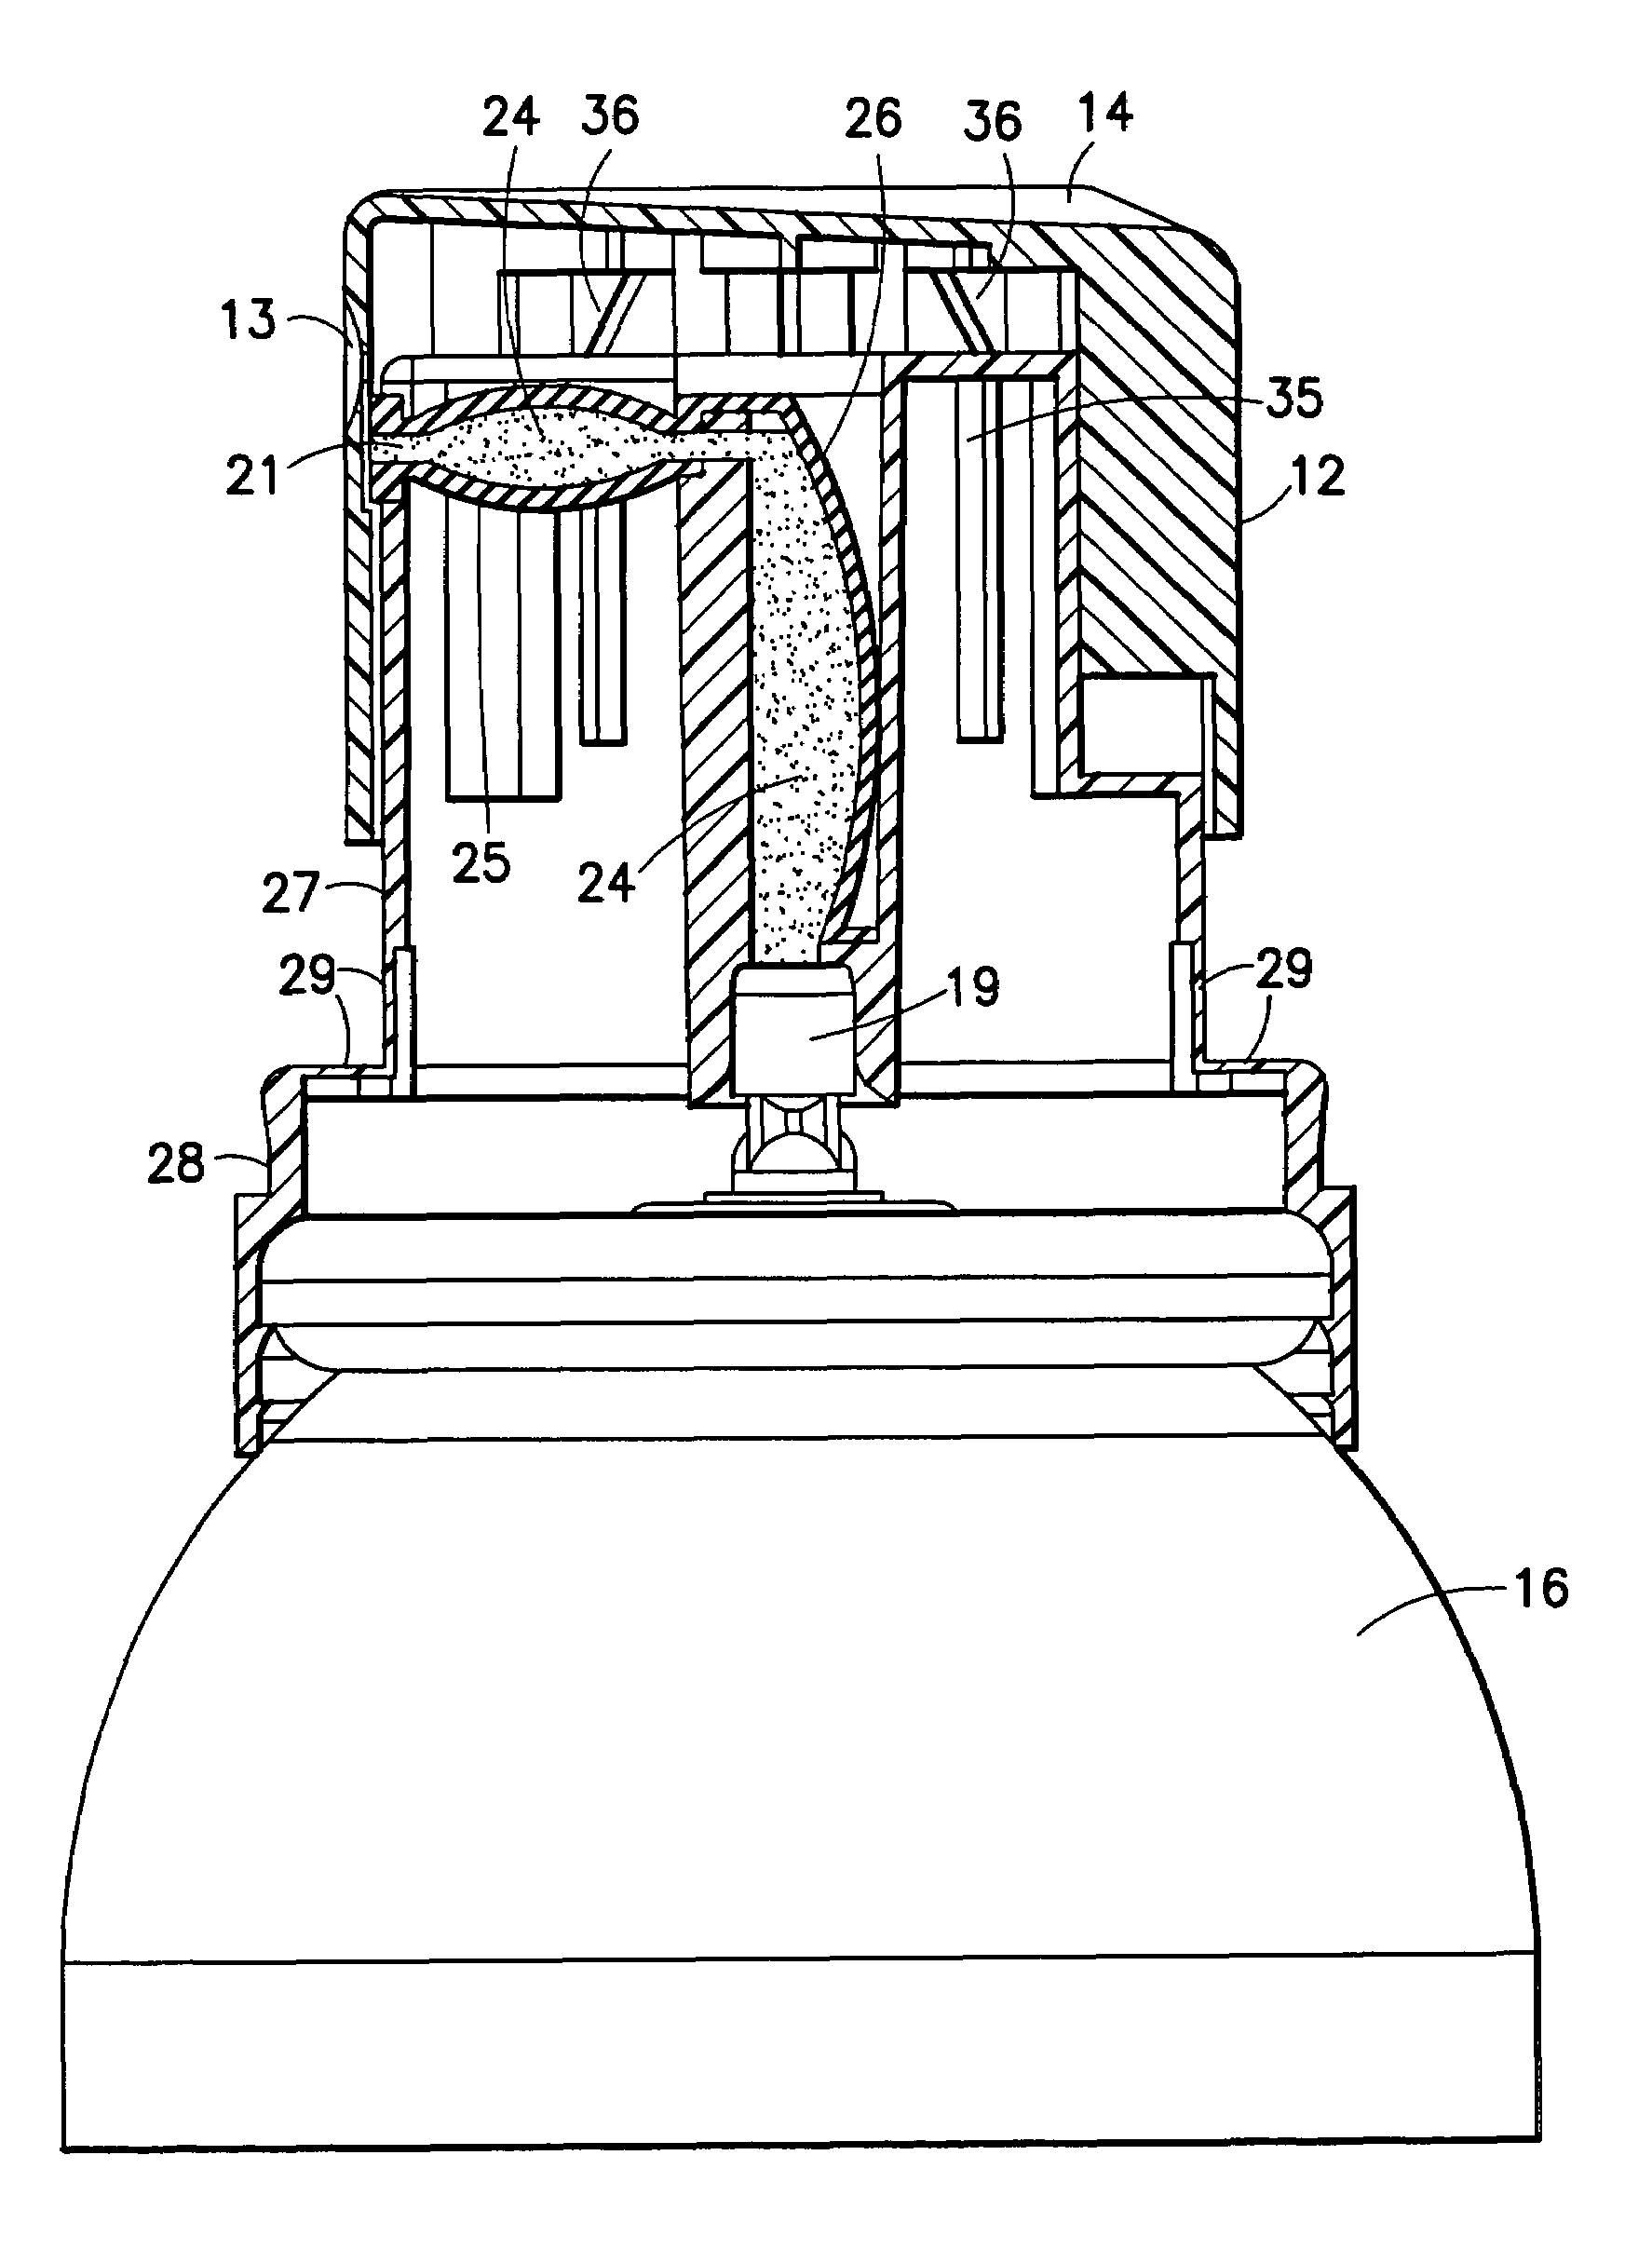 Aerosol valve actuator